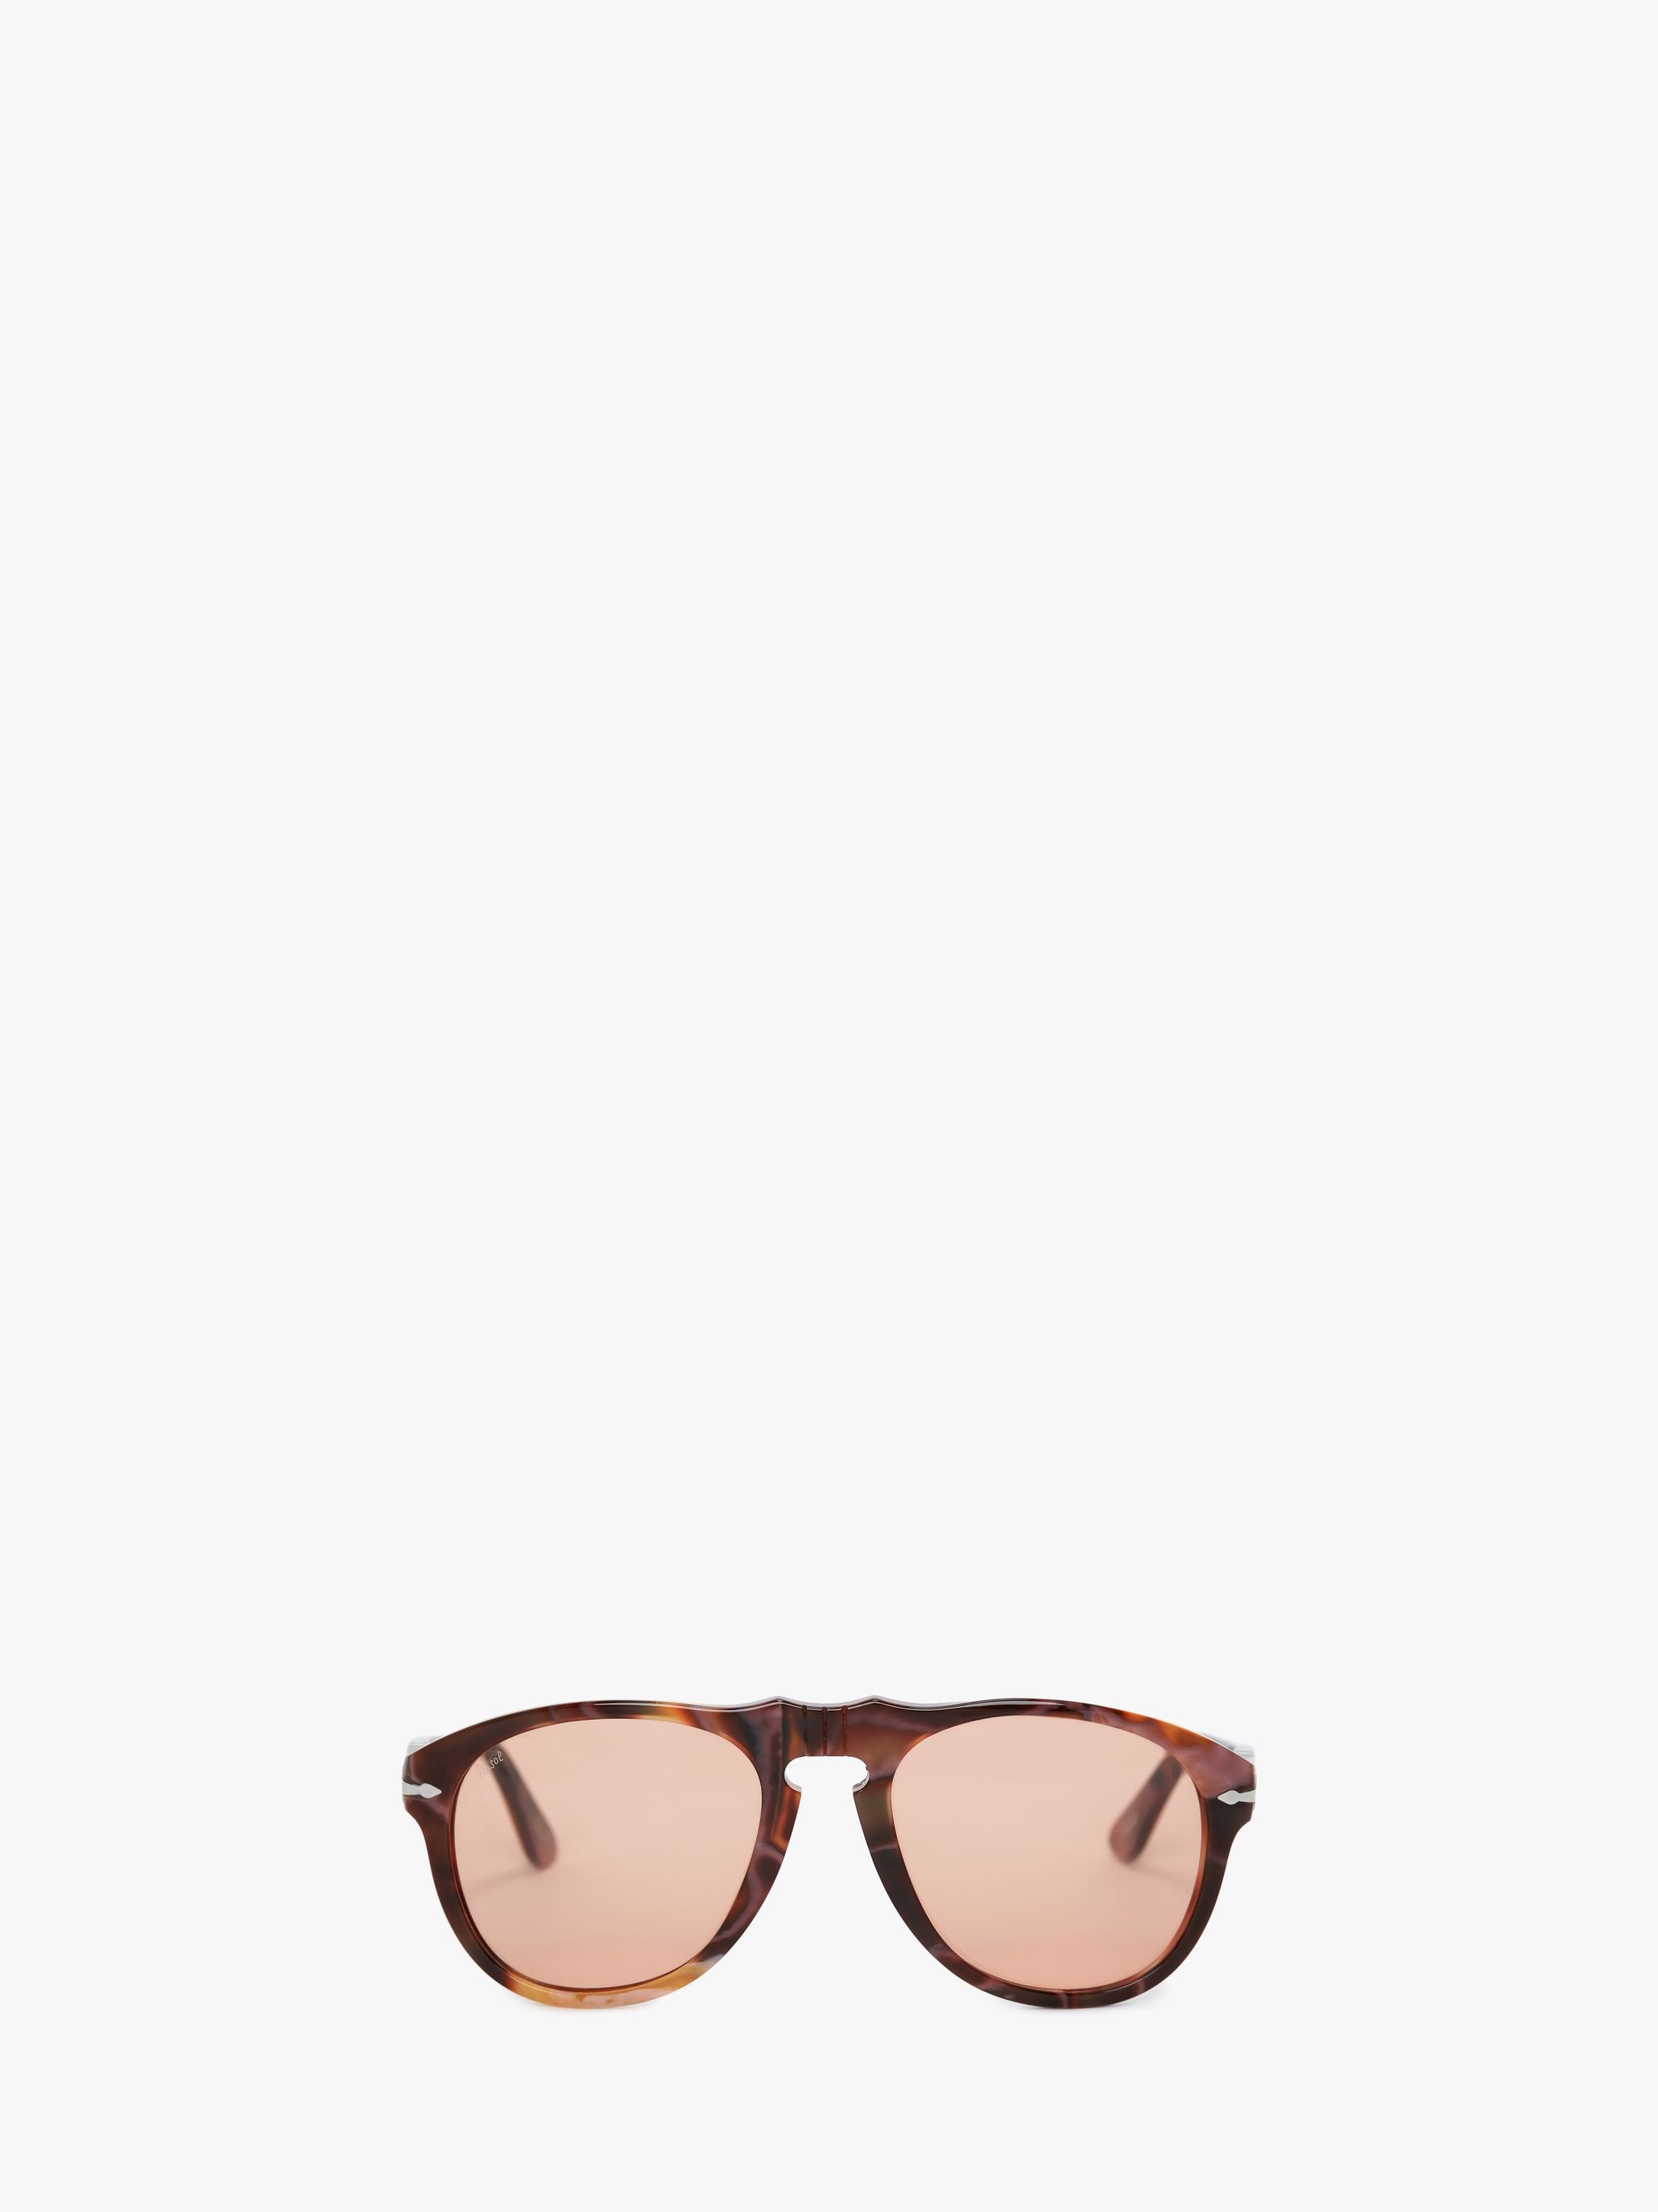 Солнцезащитные очки - авиатор JW Anderson, коричневый солнцезащитные очки calvin klein авиаторы оправа металл коричневый